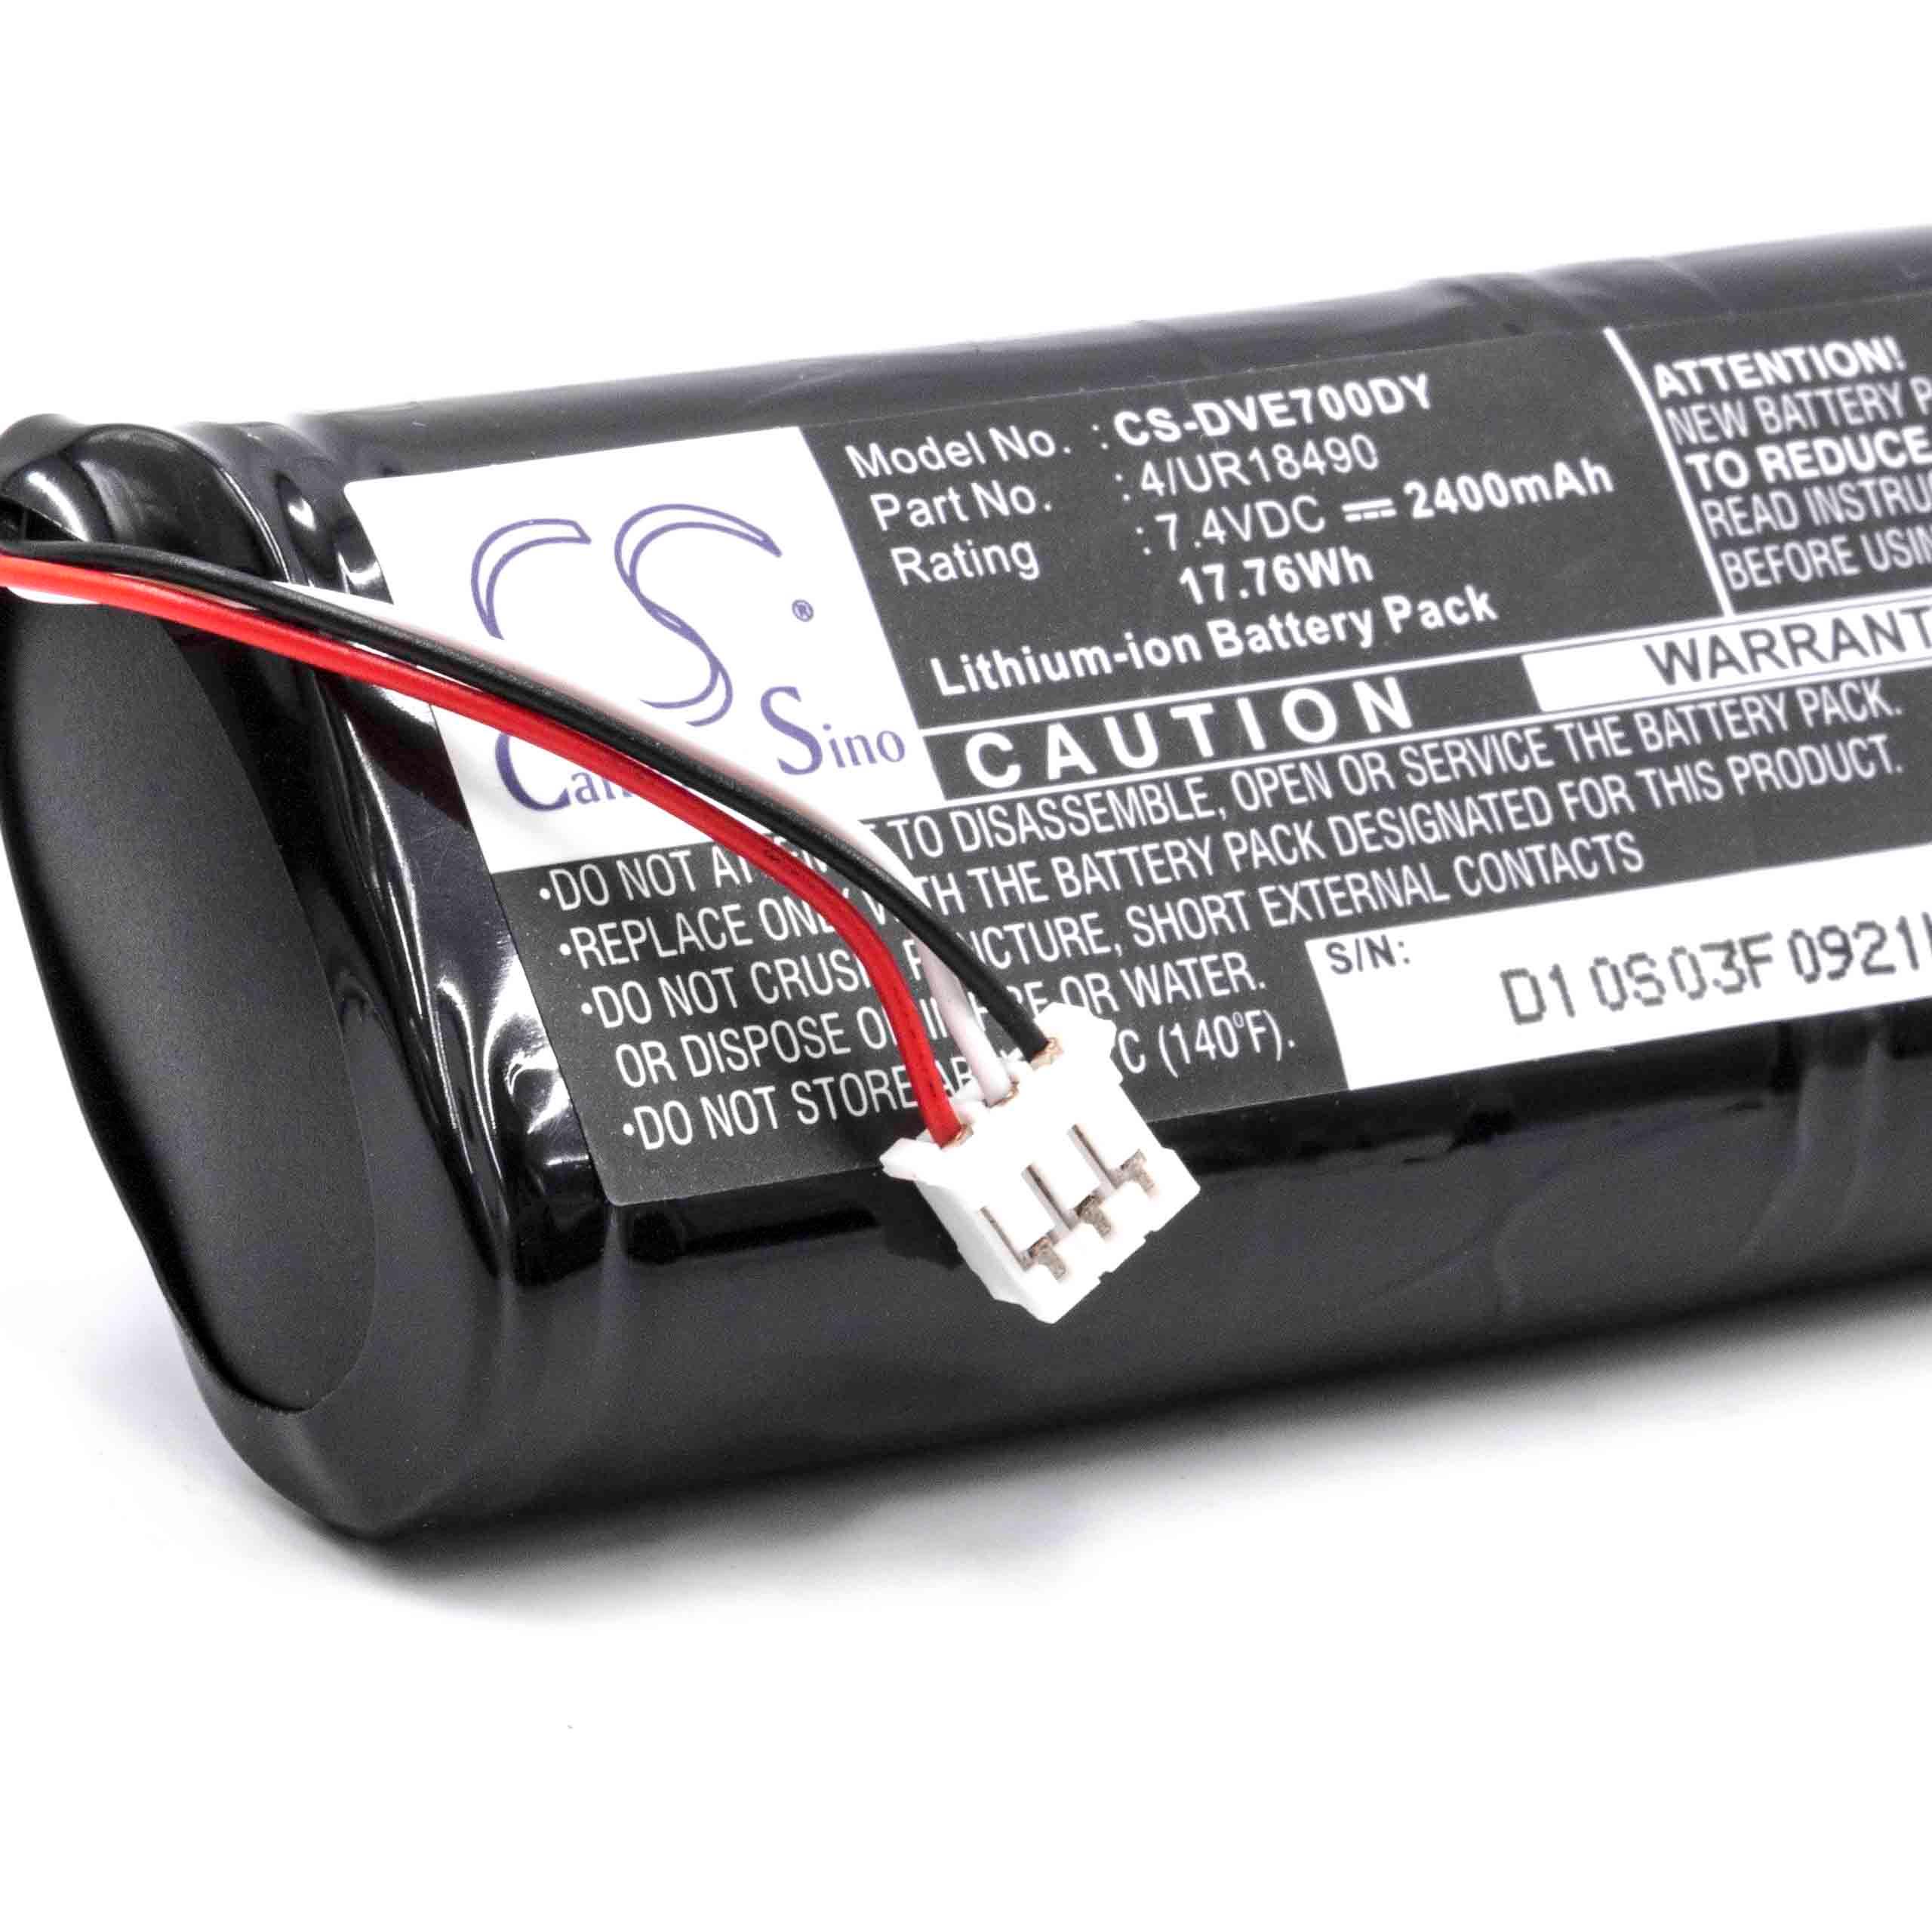 Akumulator do odtwarzacza DVD zamiennik Sony 4/UR18490 - 2400 mAh 7,4 V Li-Ion